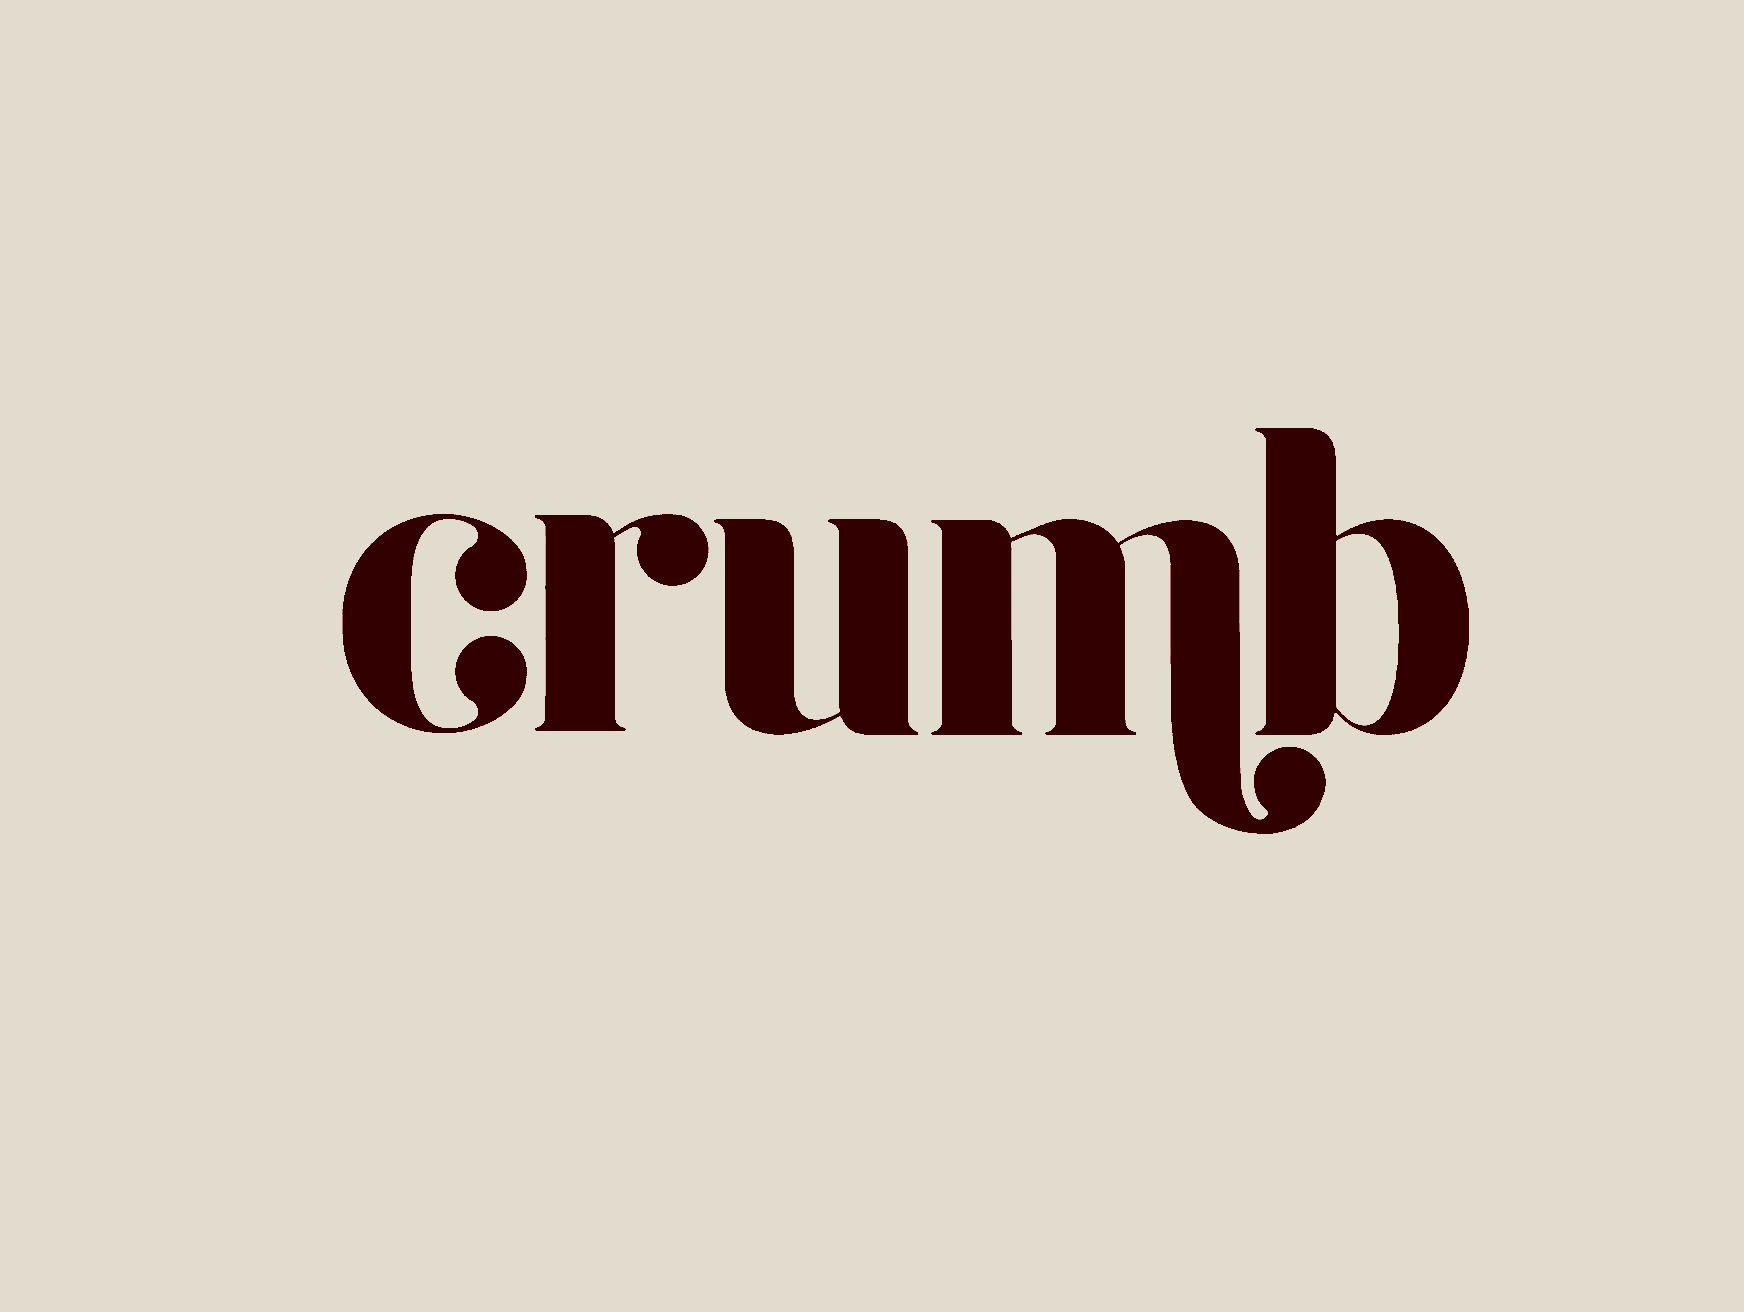 Crumb